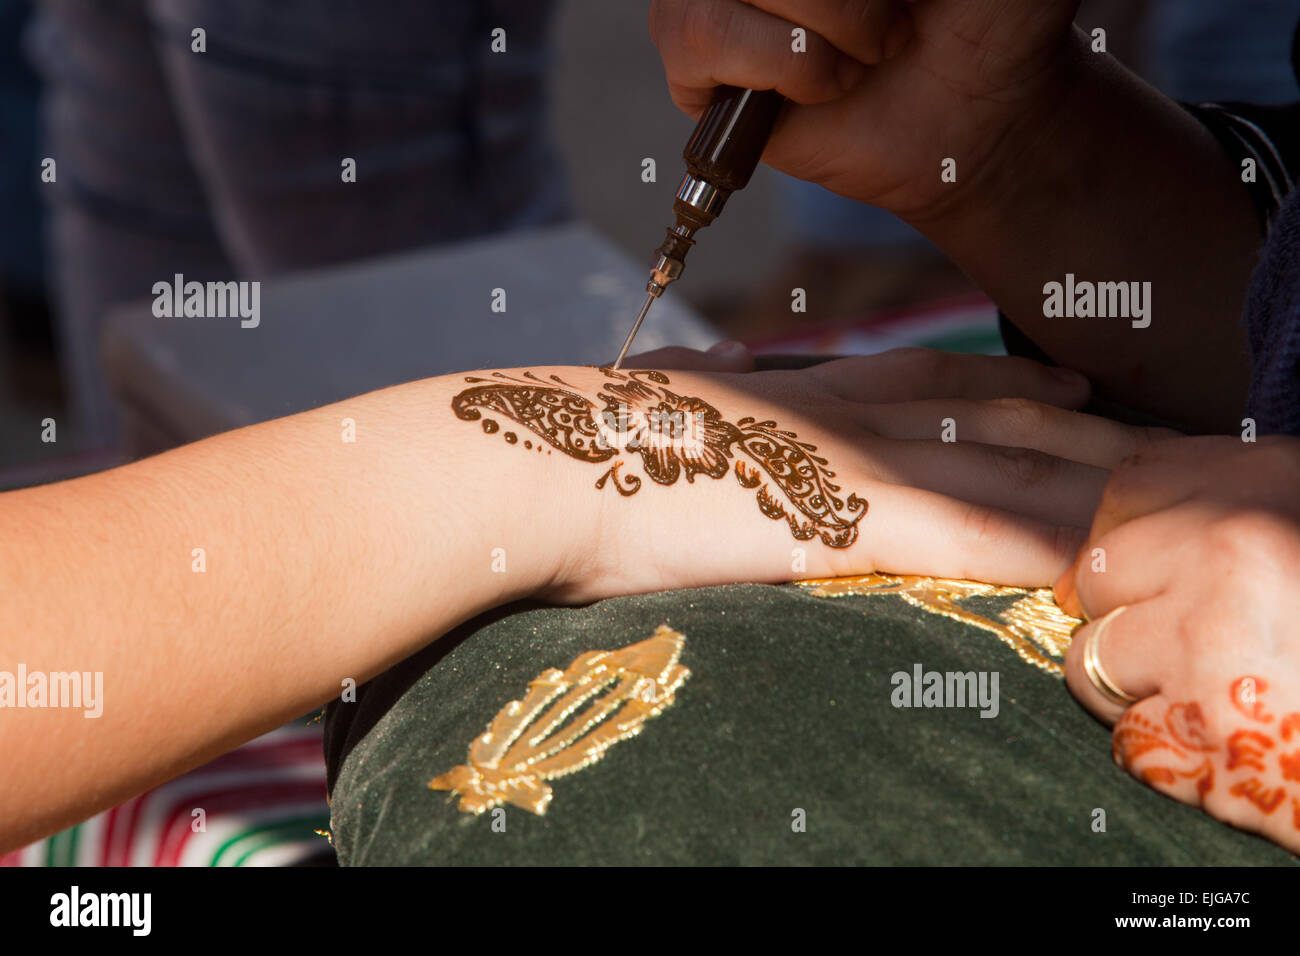 Bildausschnitt von Henna wird angewendet, um grün und gold Gewebekissen übergeben Stockfoto